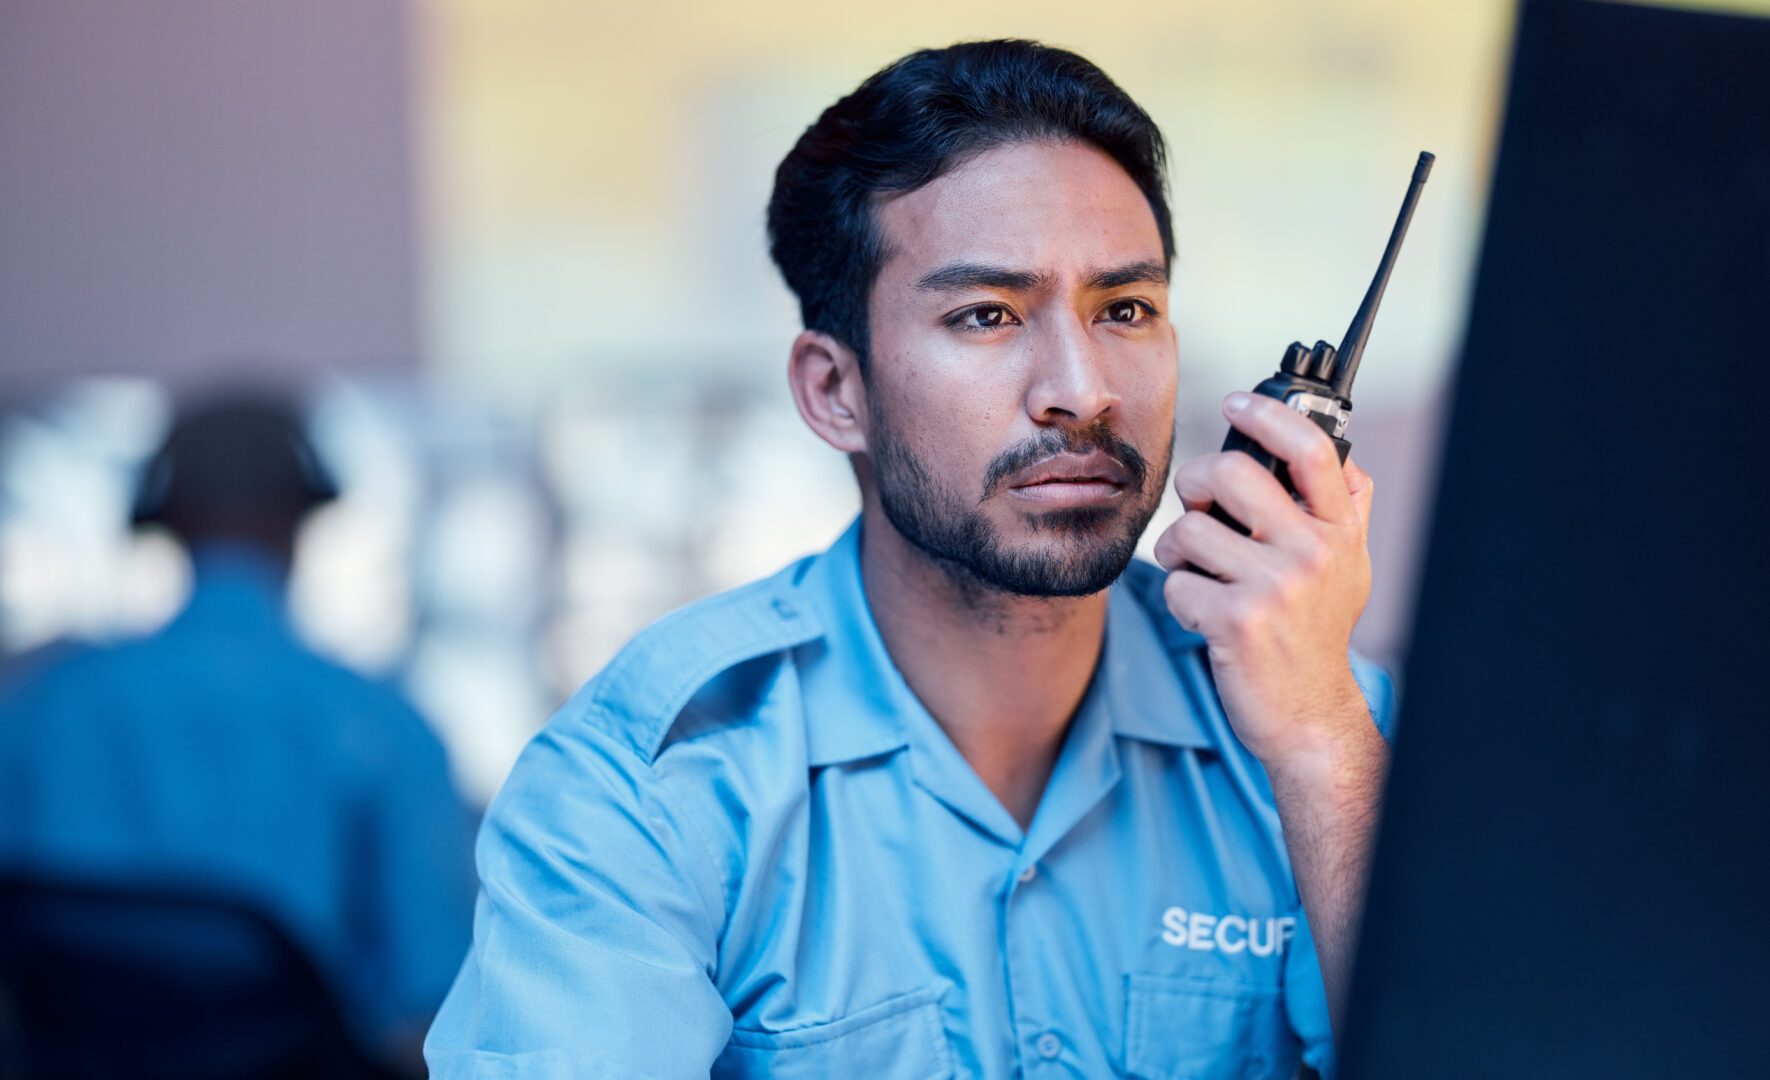 Dispatcher going through a crisis communication scenario